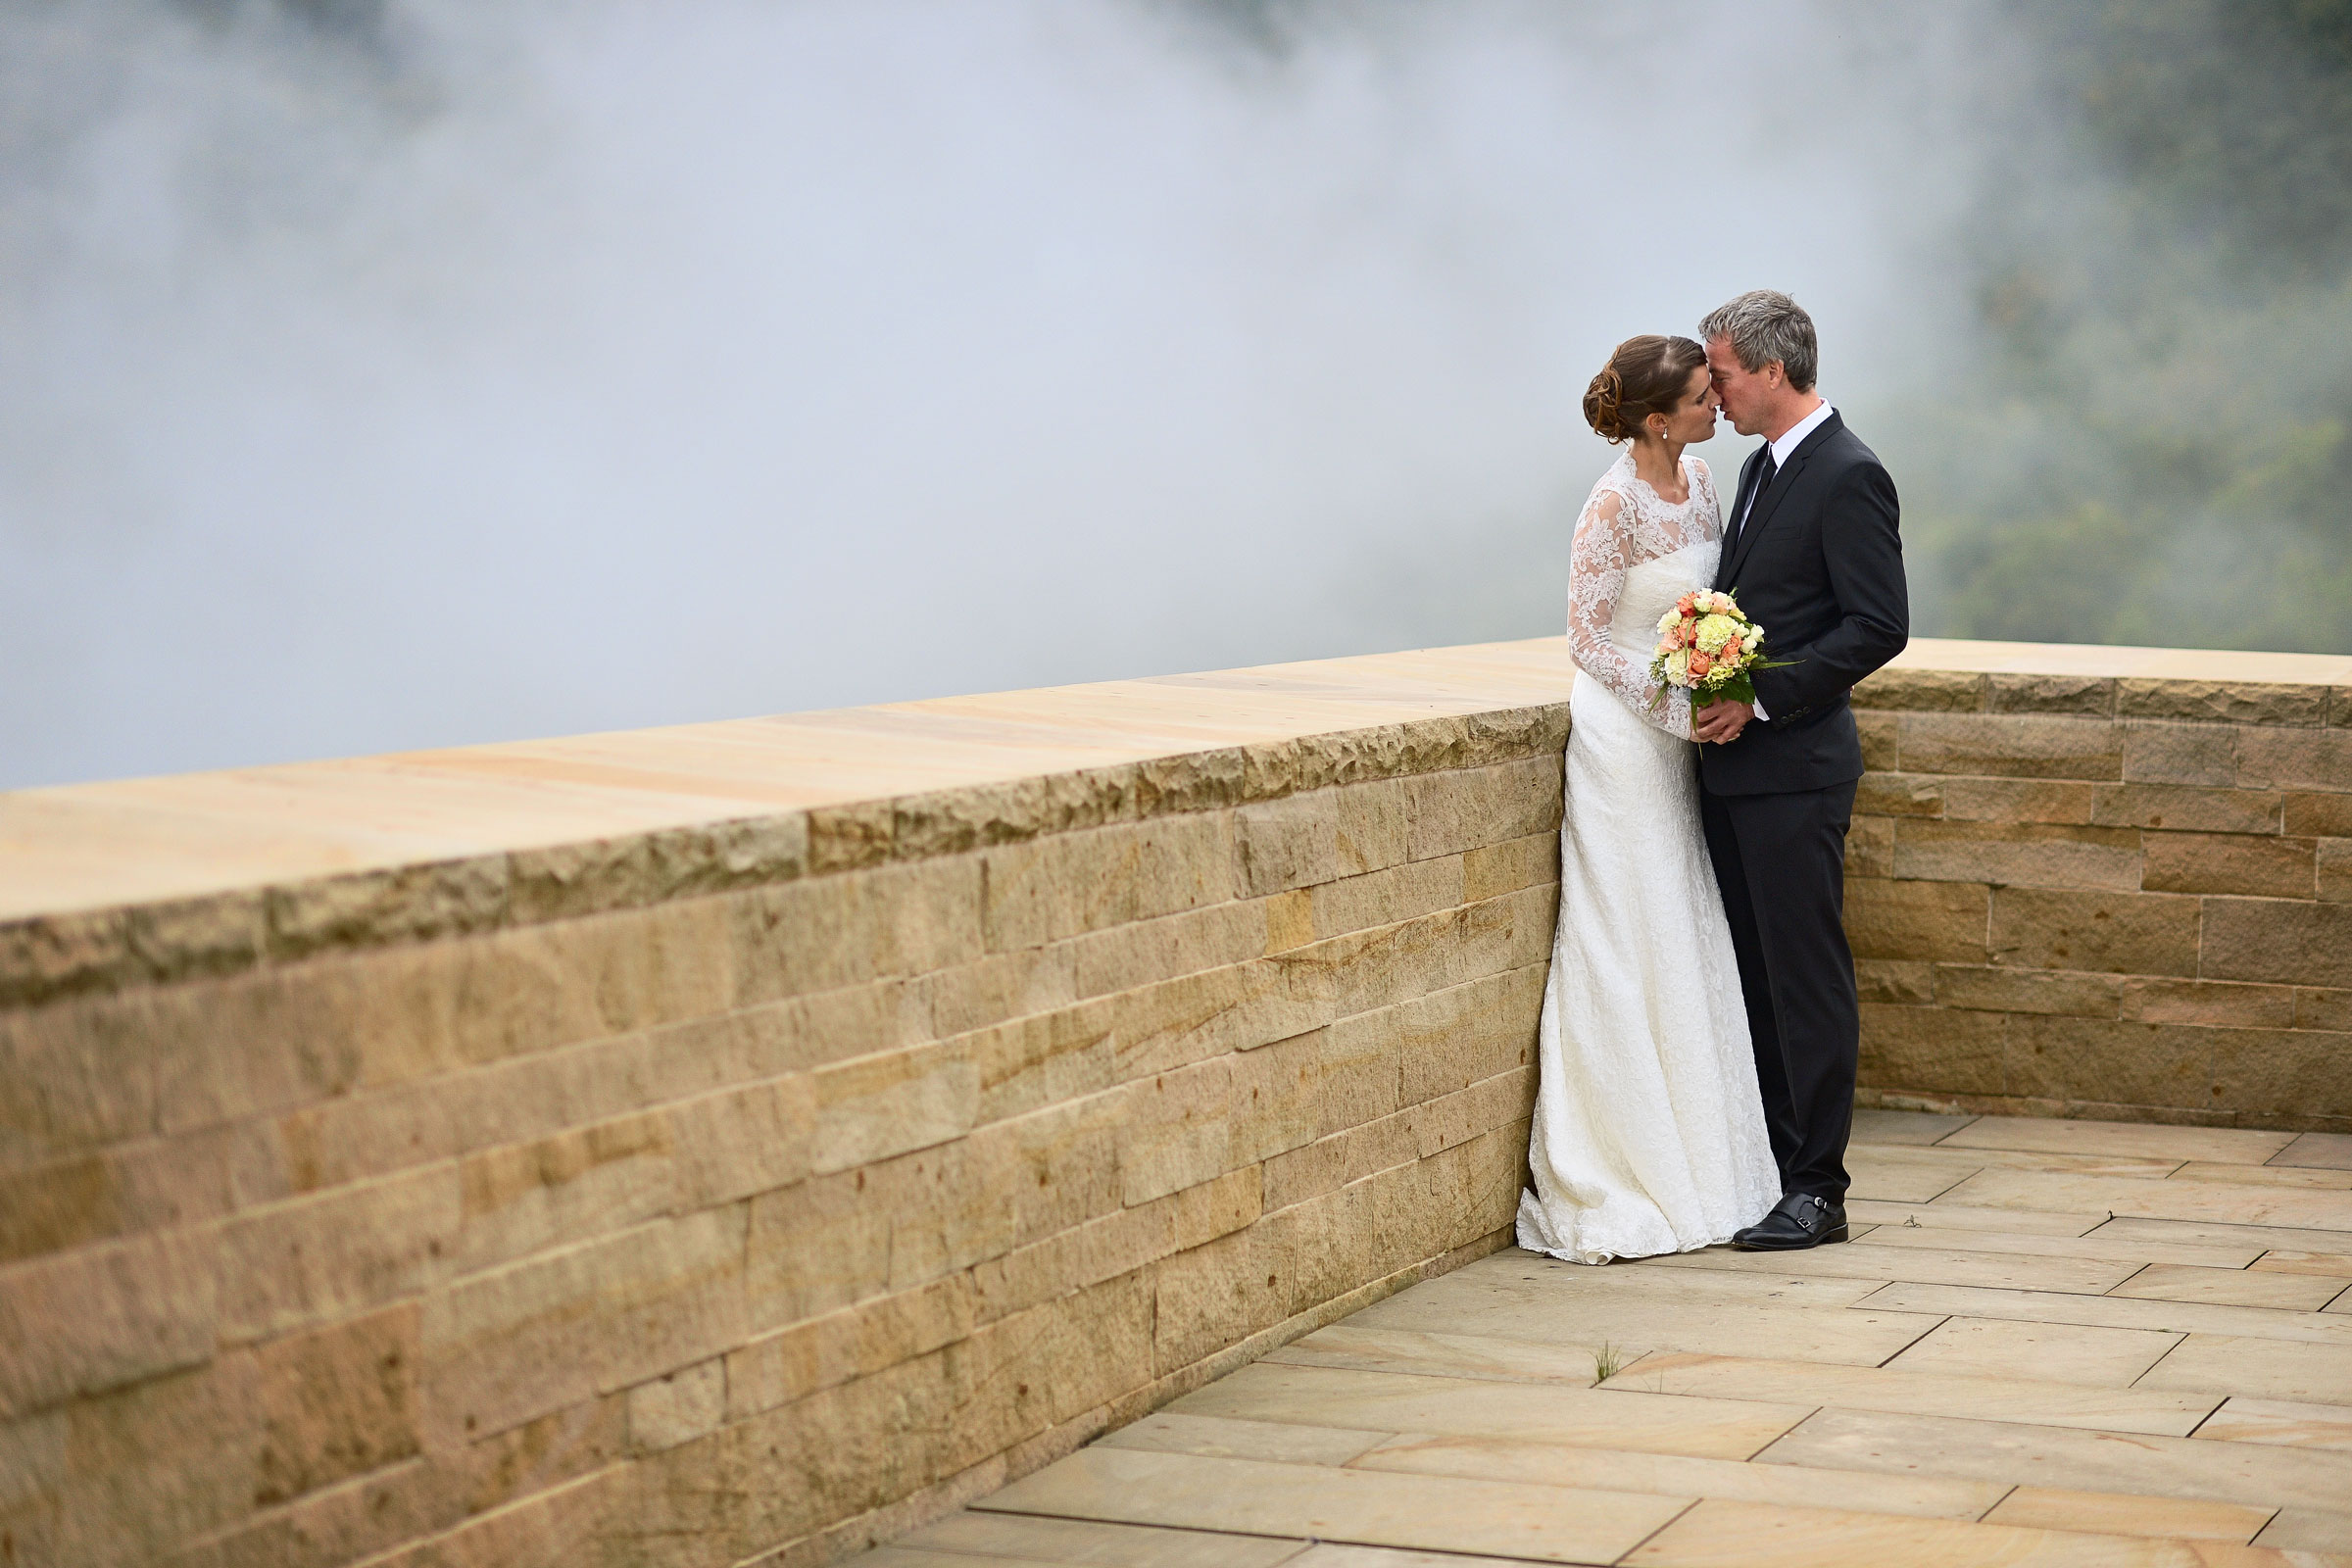 Onelovephoto Hochzeitsfotografie aus Mannheim. Beschreibung: Ein Brautpaar küsst sich an einer Steinmauer vor einem Wasserfall. Lebendige Hochzeitsreportagen für jedes Budget.